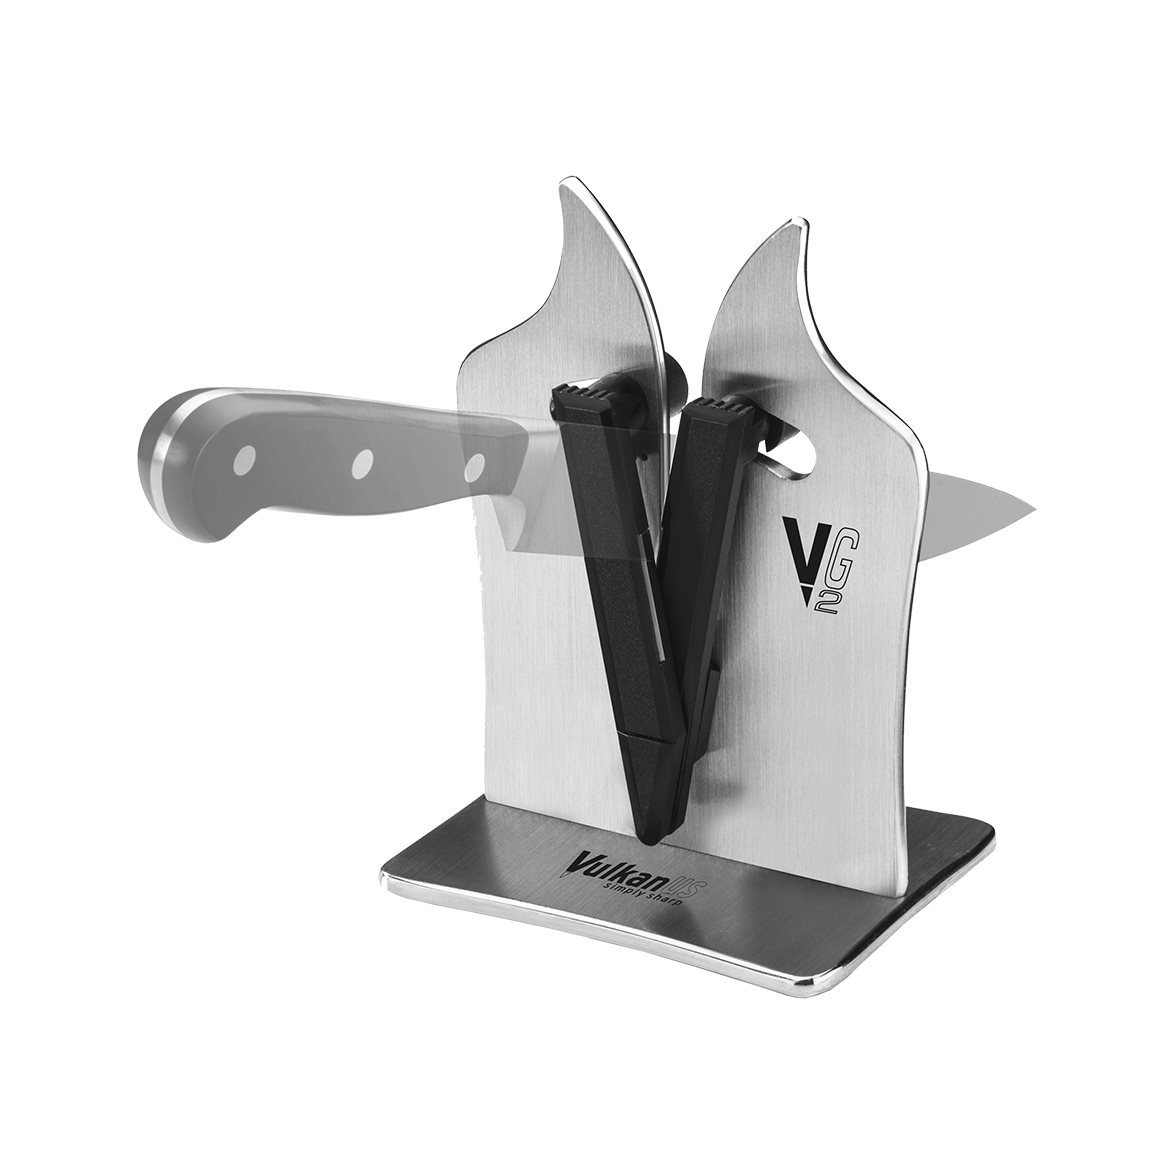 https://royaldesign.com/image/2/vulkanus-vulkanus-vg2-professional-knife-sharpener-1?w=800&quality=80